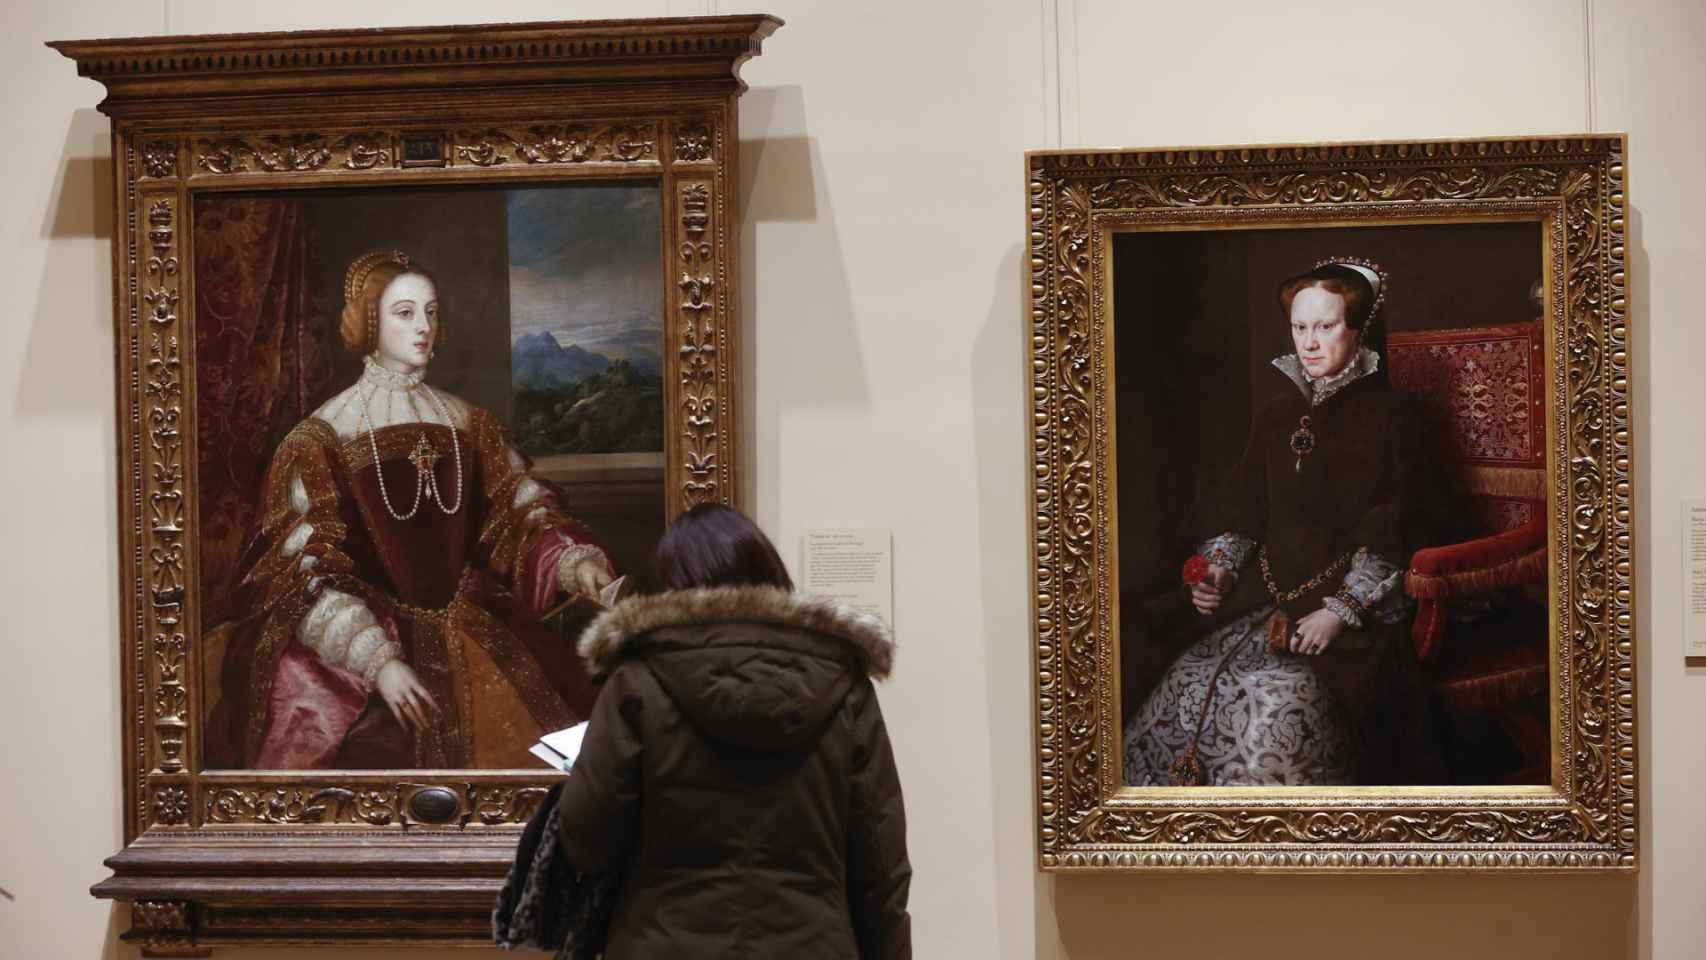 Retratos Emperatriz Isabel de Portugal, de Tiziano y María Tudor, de Antonio Moro, que forman parte de 'El Prado en femenino'.